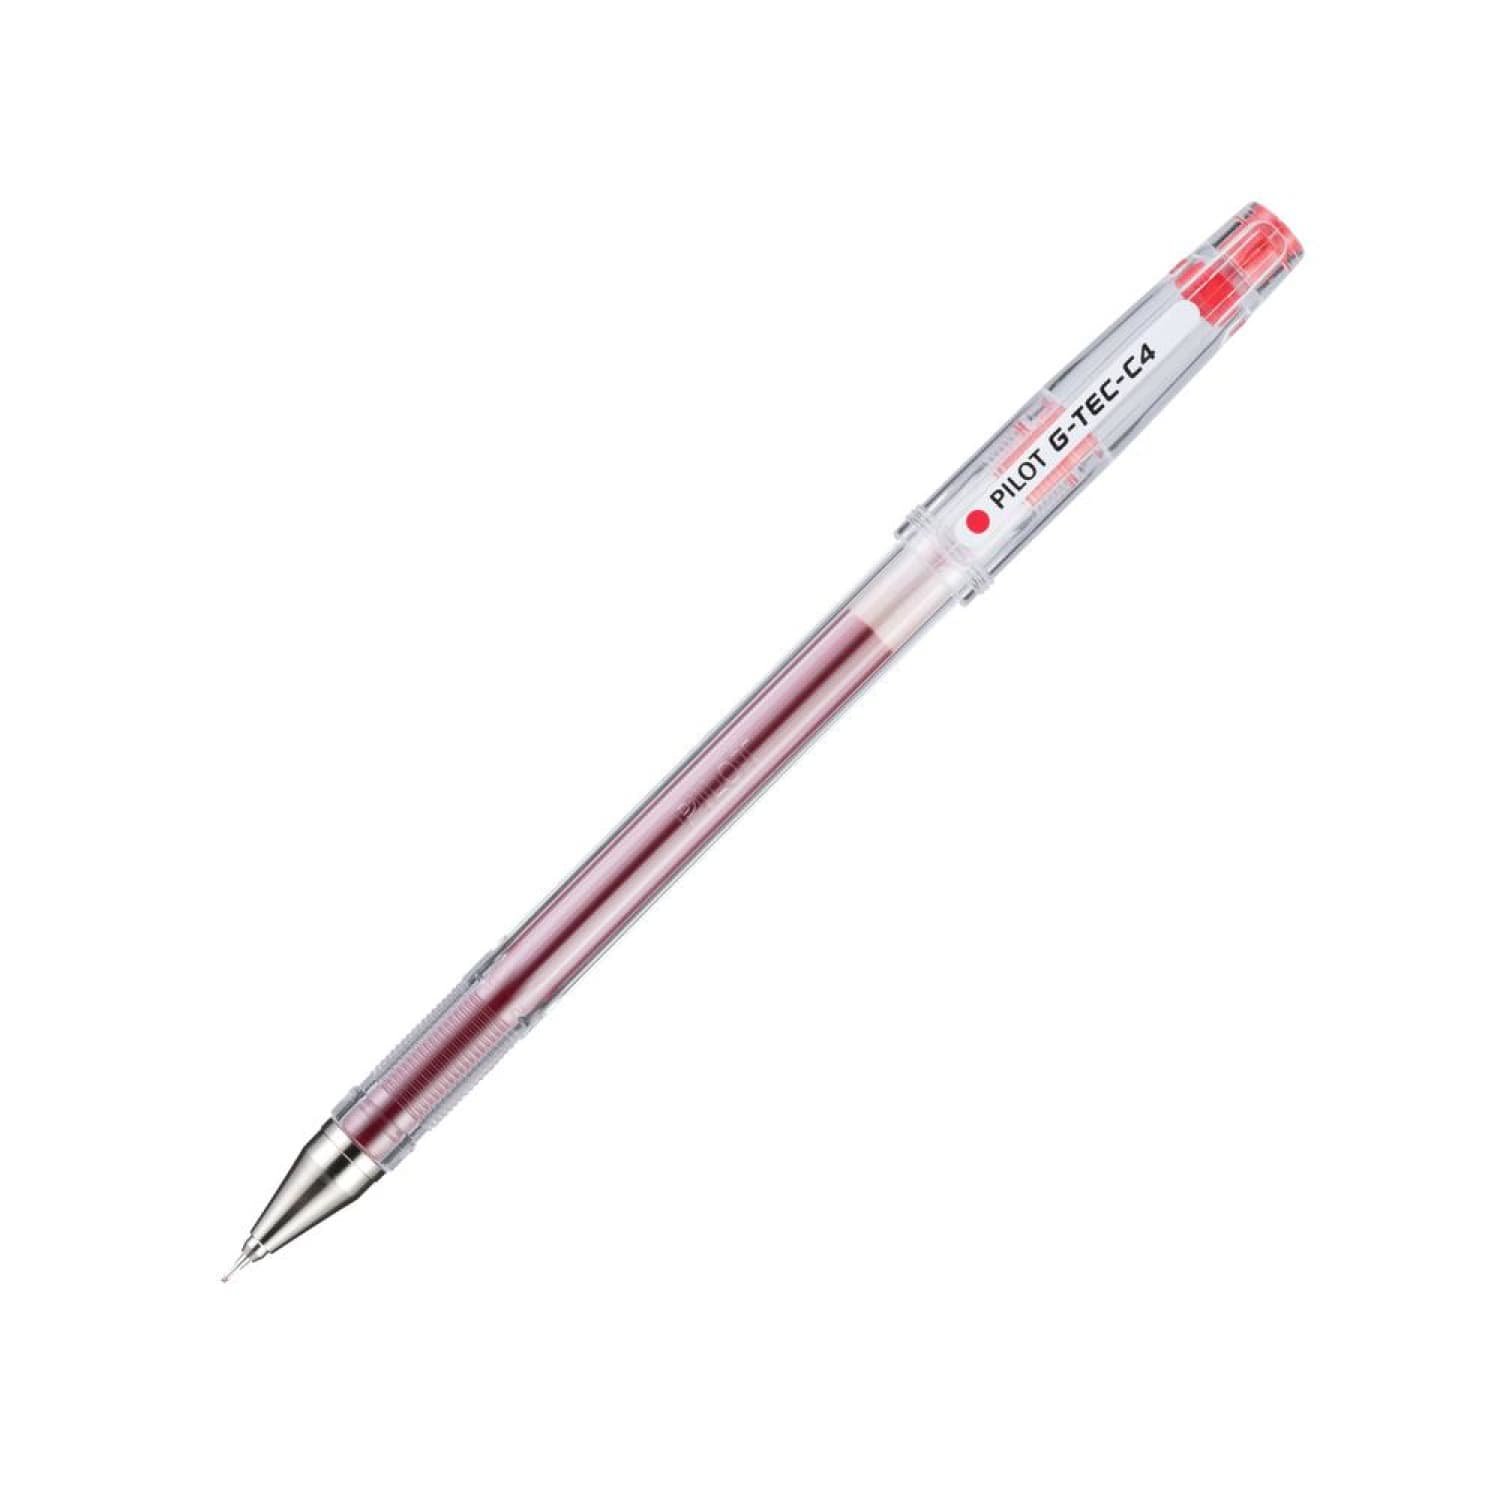 Pilot G-Tec-C4 Ultra Fine Red 0.4mm Rollerball Pen Dozen